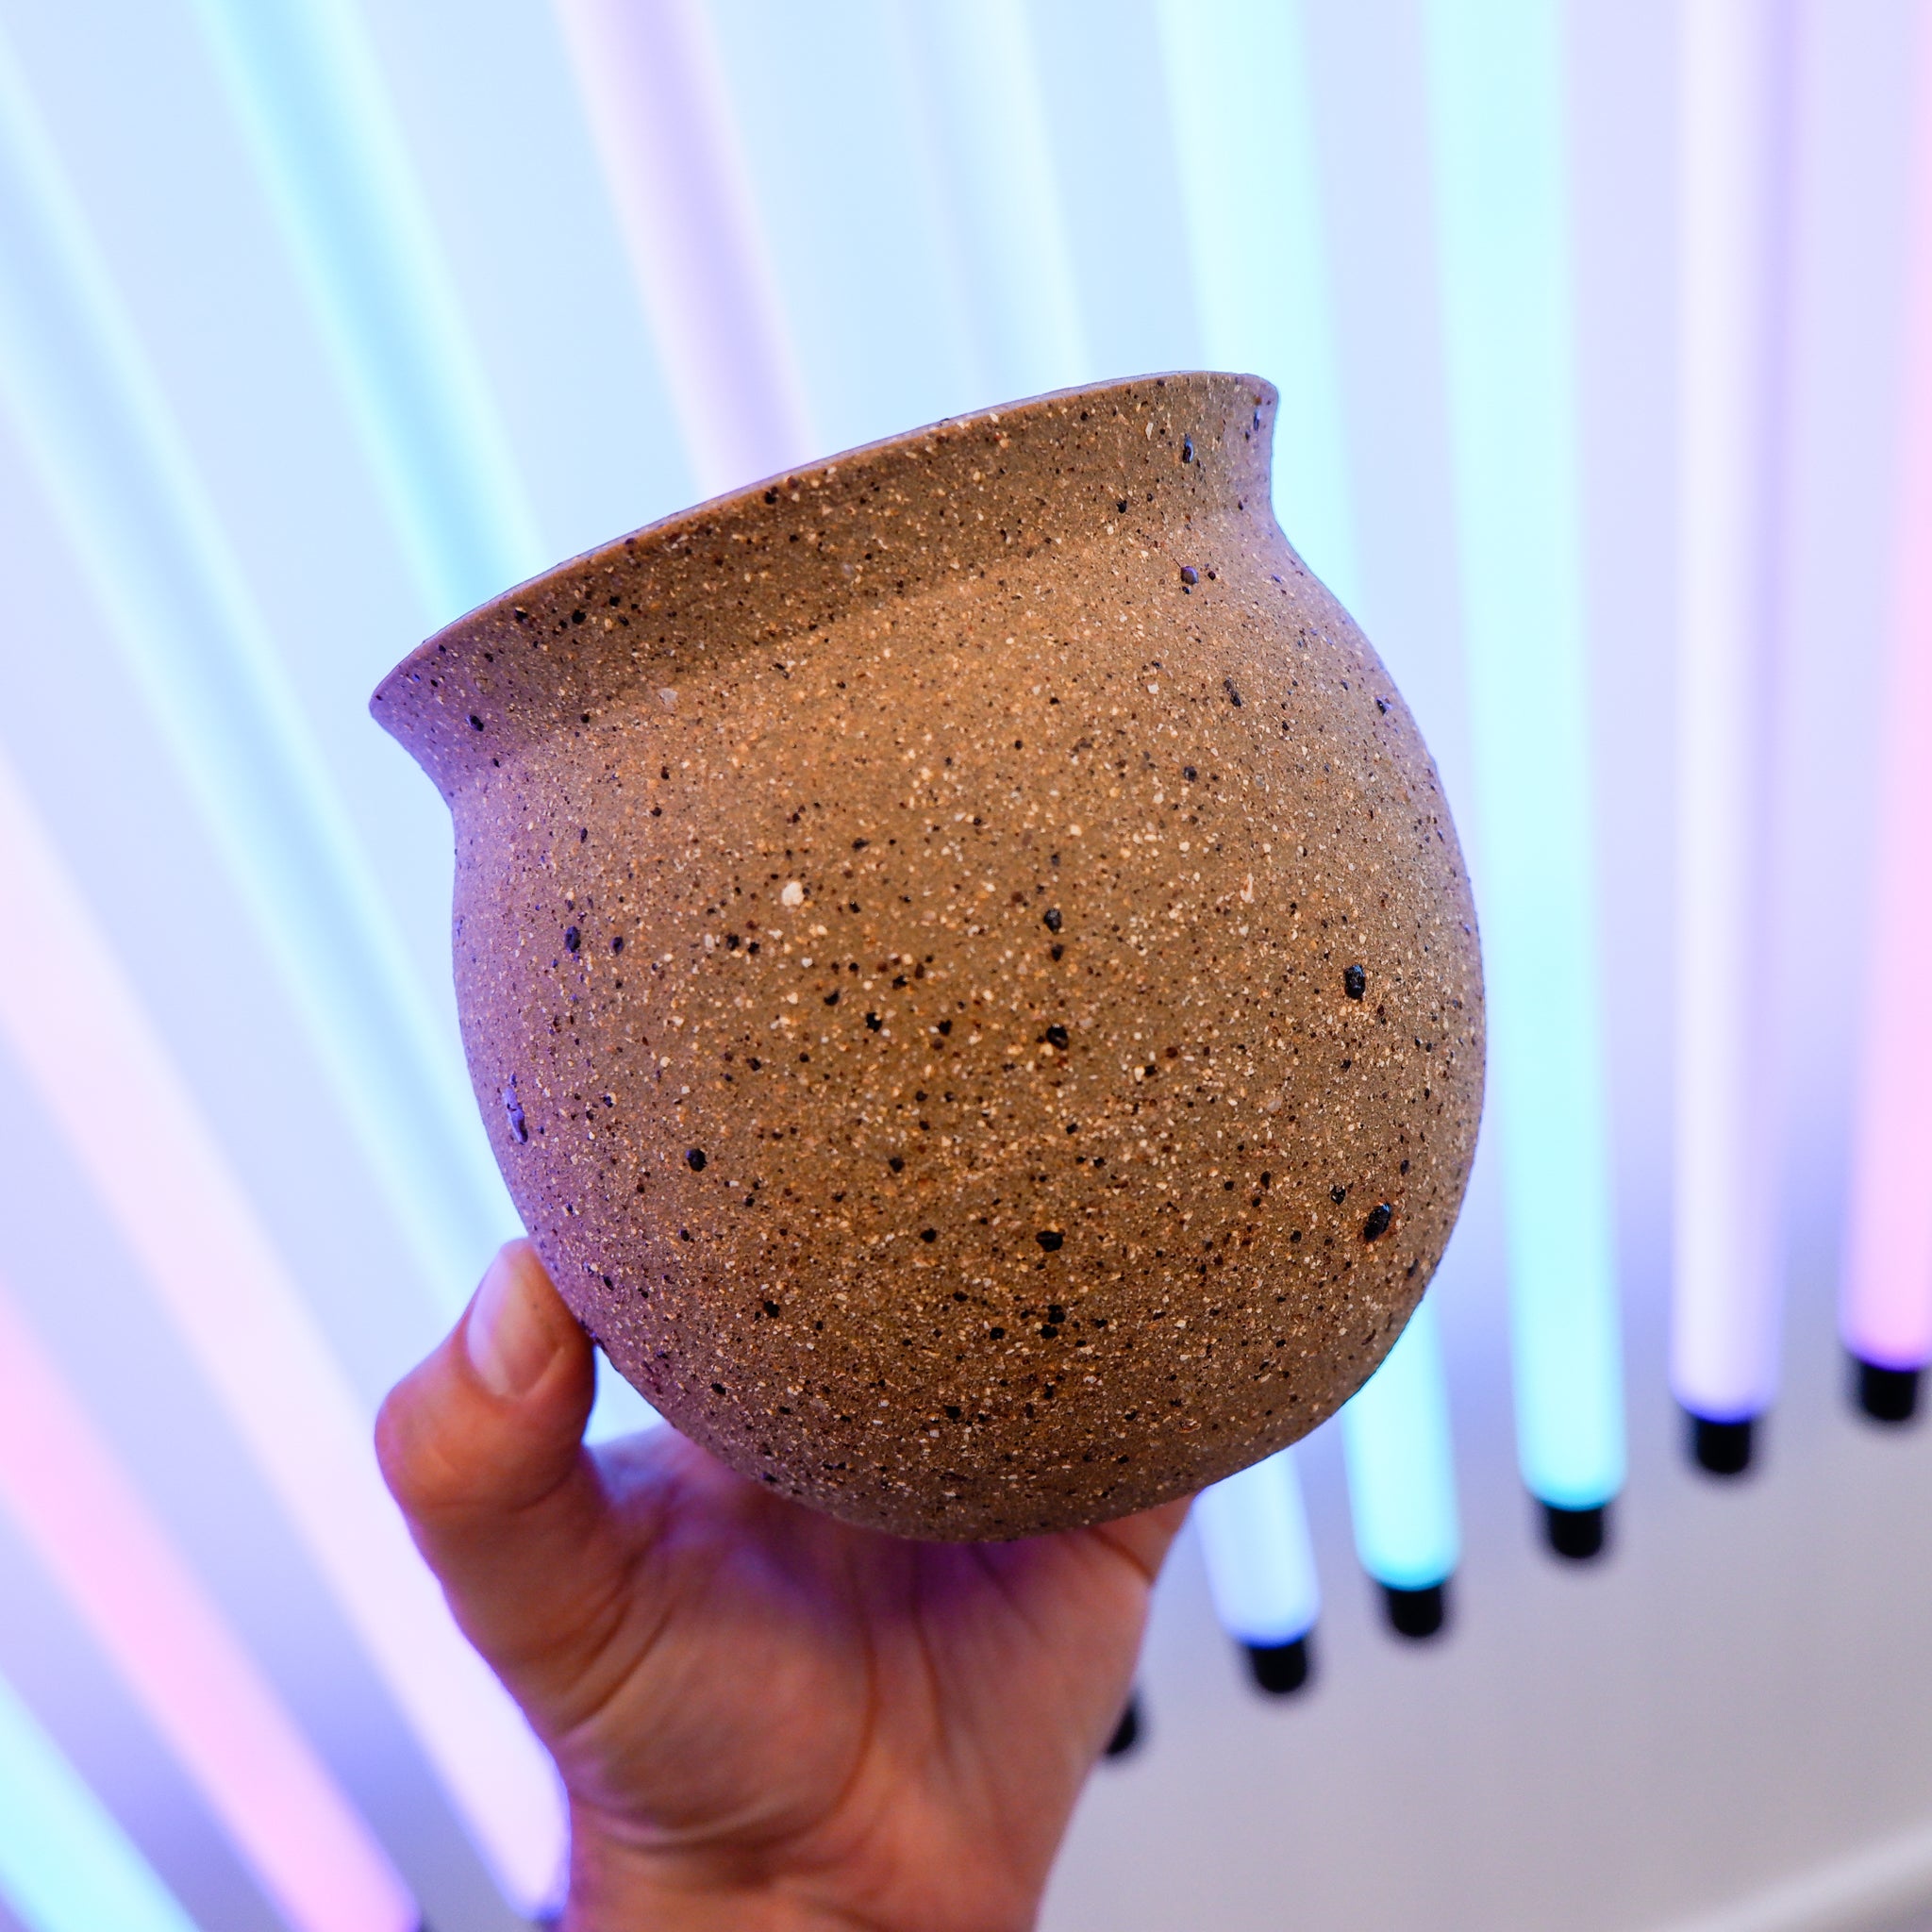 Ceramic Planter